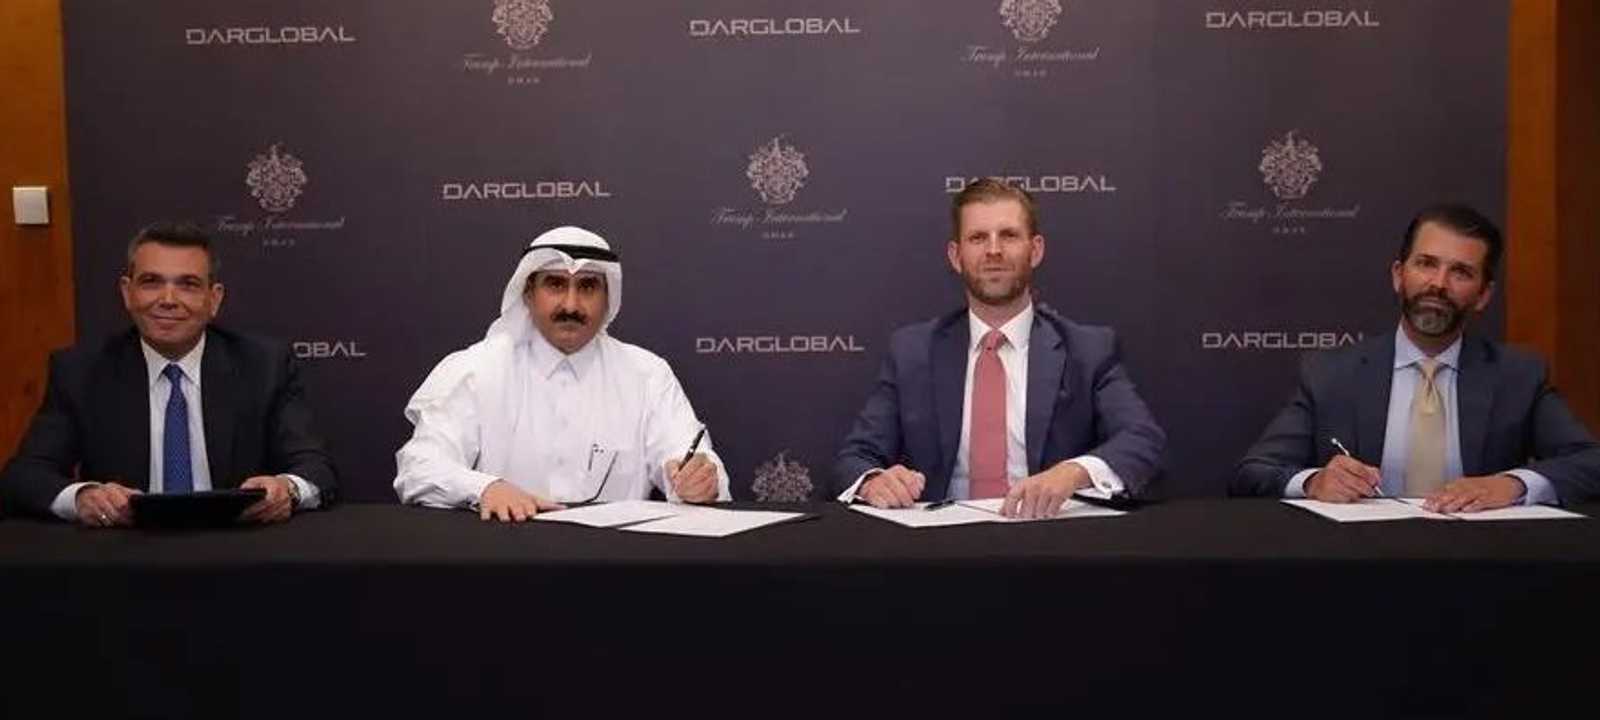 دار غلوبال العقارية توقع اتفاقية لإنشاء برج ترامب في جدة